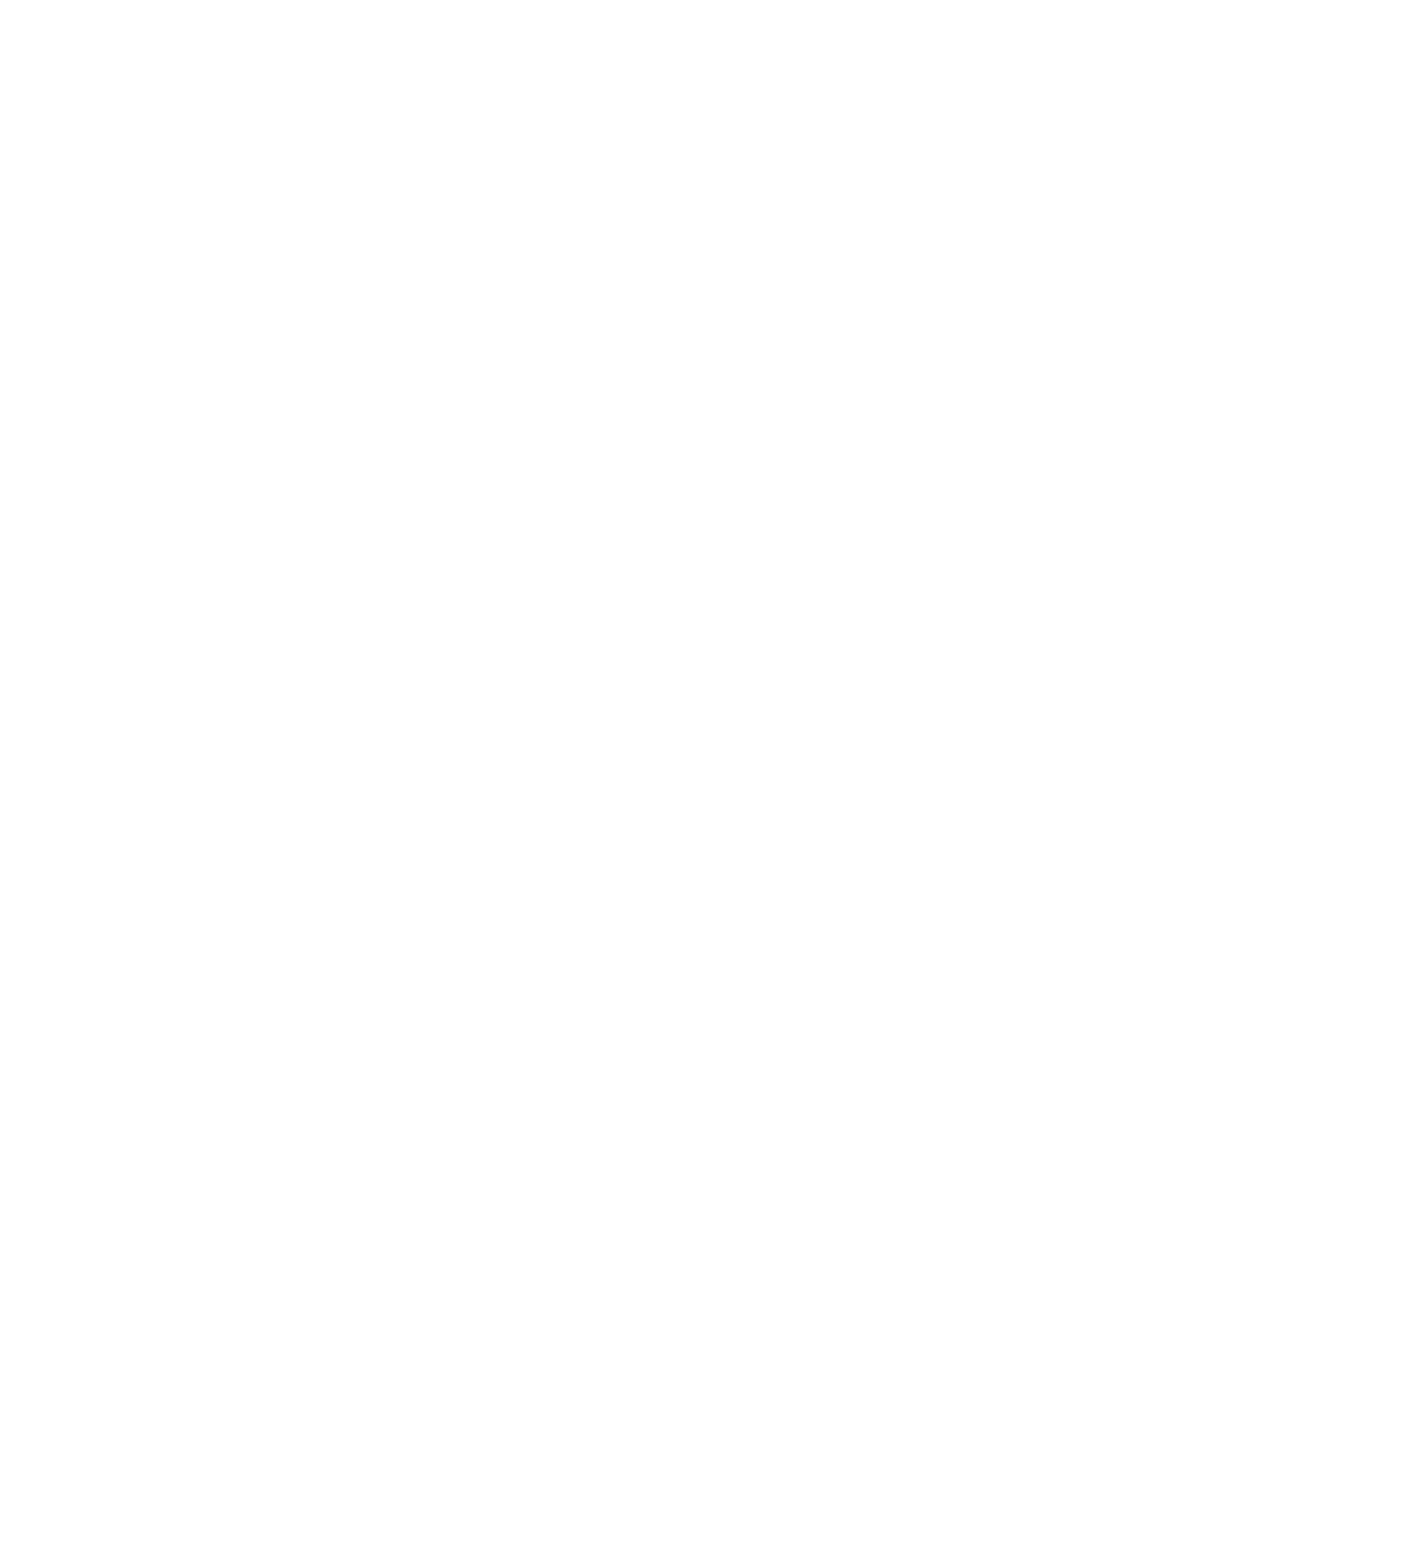 Vistry Group logo for dark backgrounds (transparent PNG)